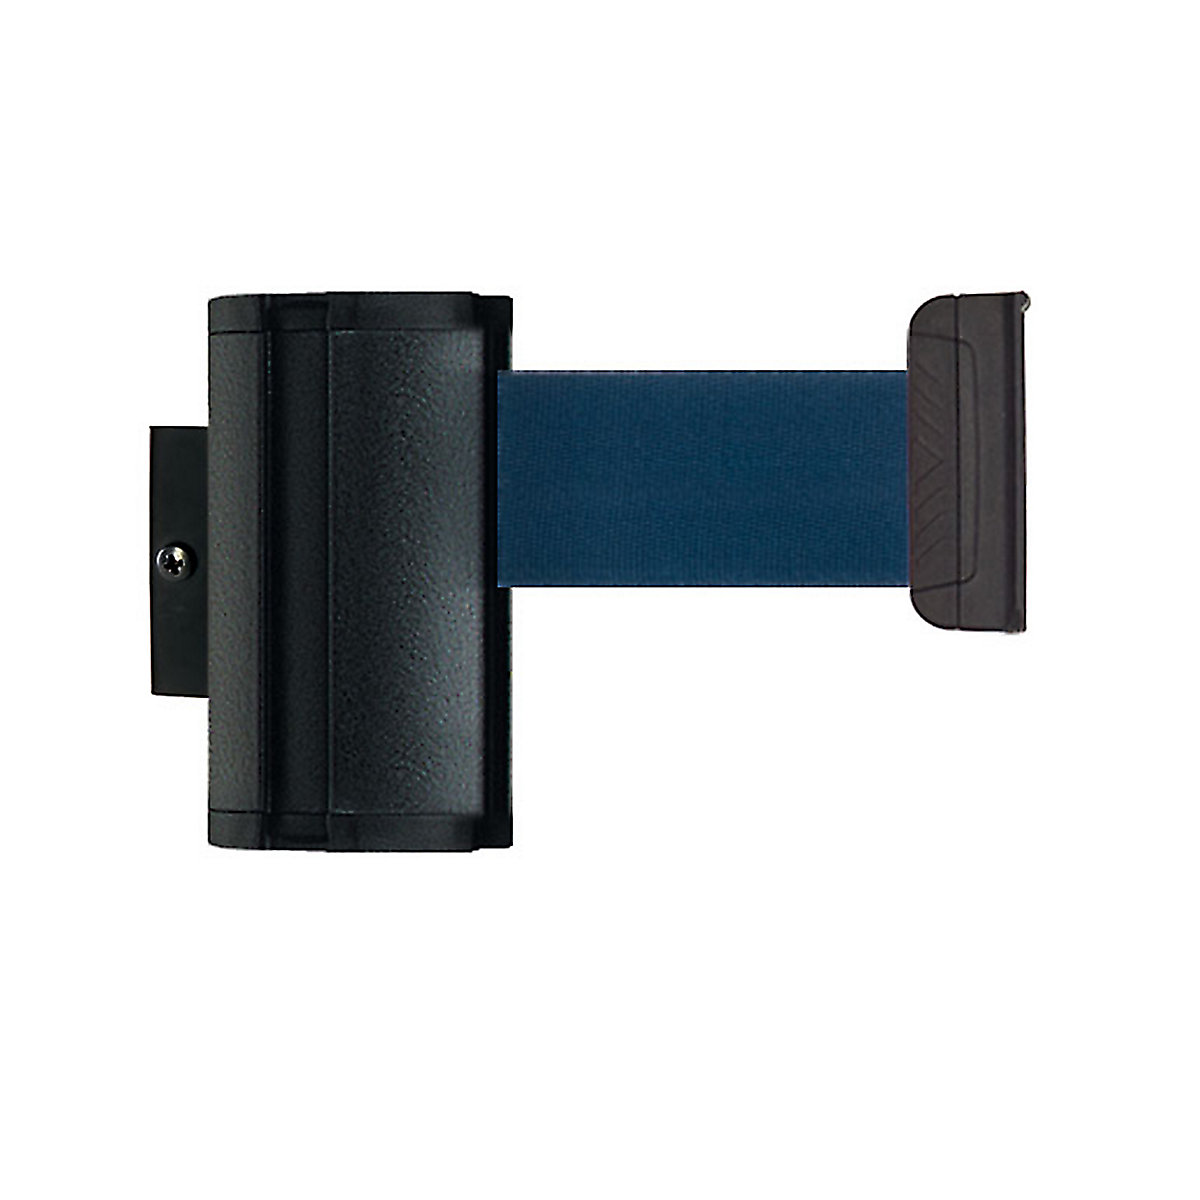 Cassete de cinta Wall Mount, extração máx. da cinta 3700 mm, cor da cinta azul marinho-7